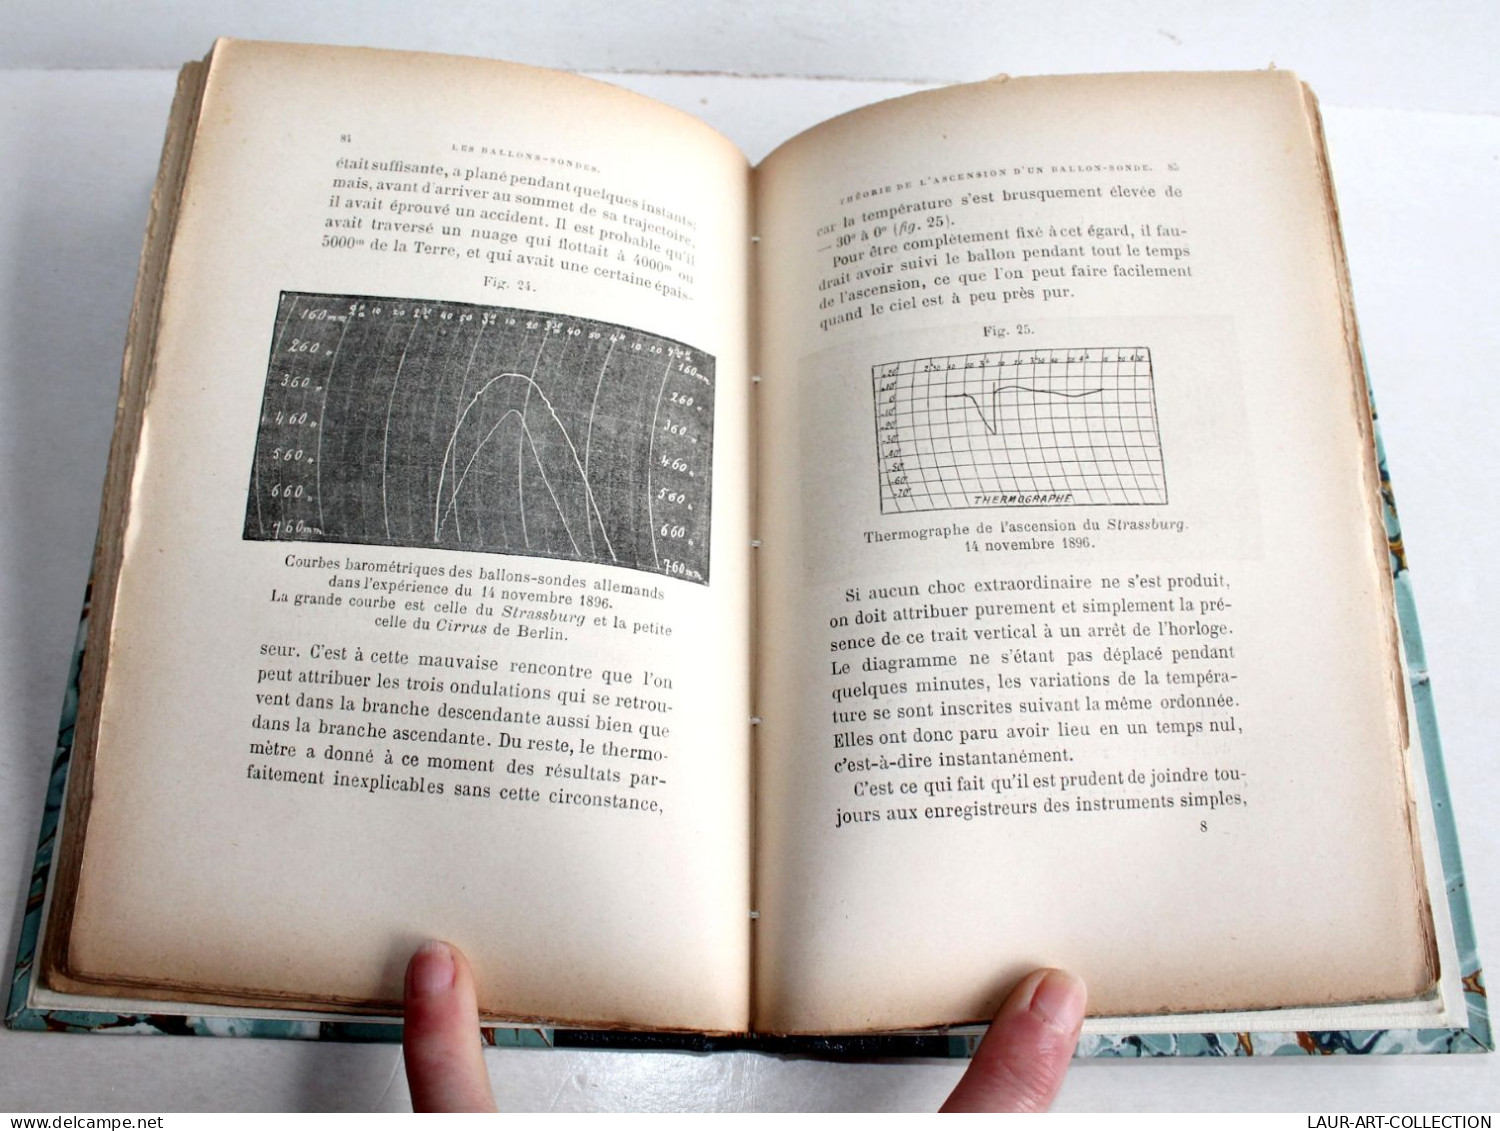 RARE ENVOI D'AUTEUR DE FONVIELLE! LES BALLONS SONDES DE HERMITE ET BESANCON 1898 / ANCIEN LIVRE XIXe SIECLE (2204.33) - Livres Dédicacés